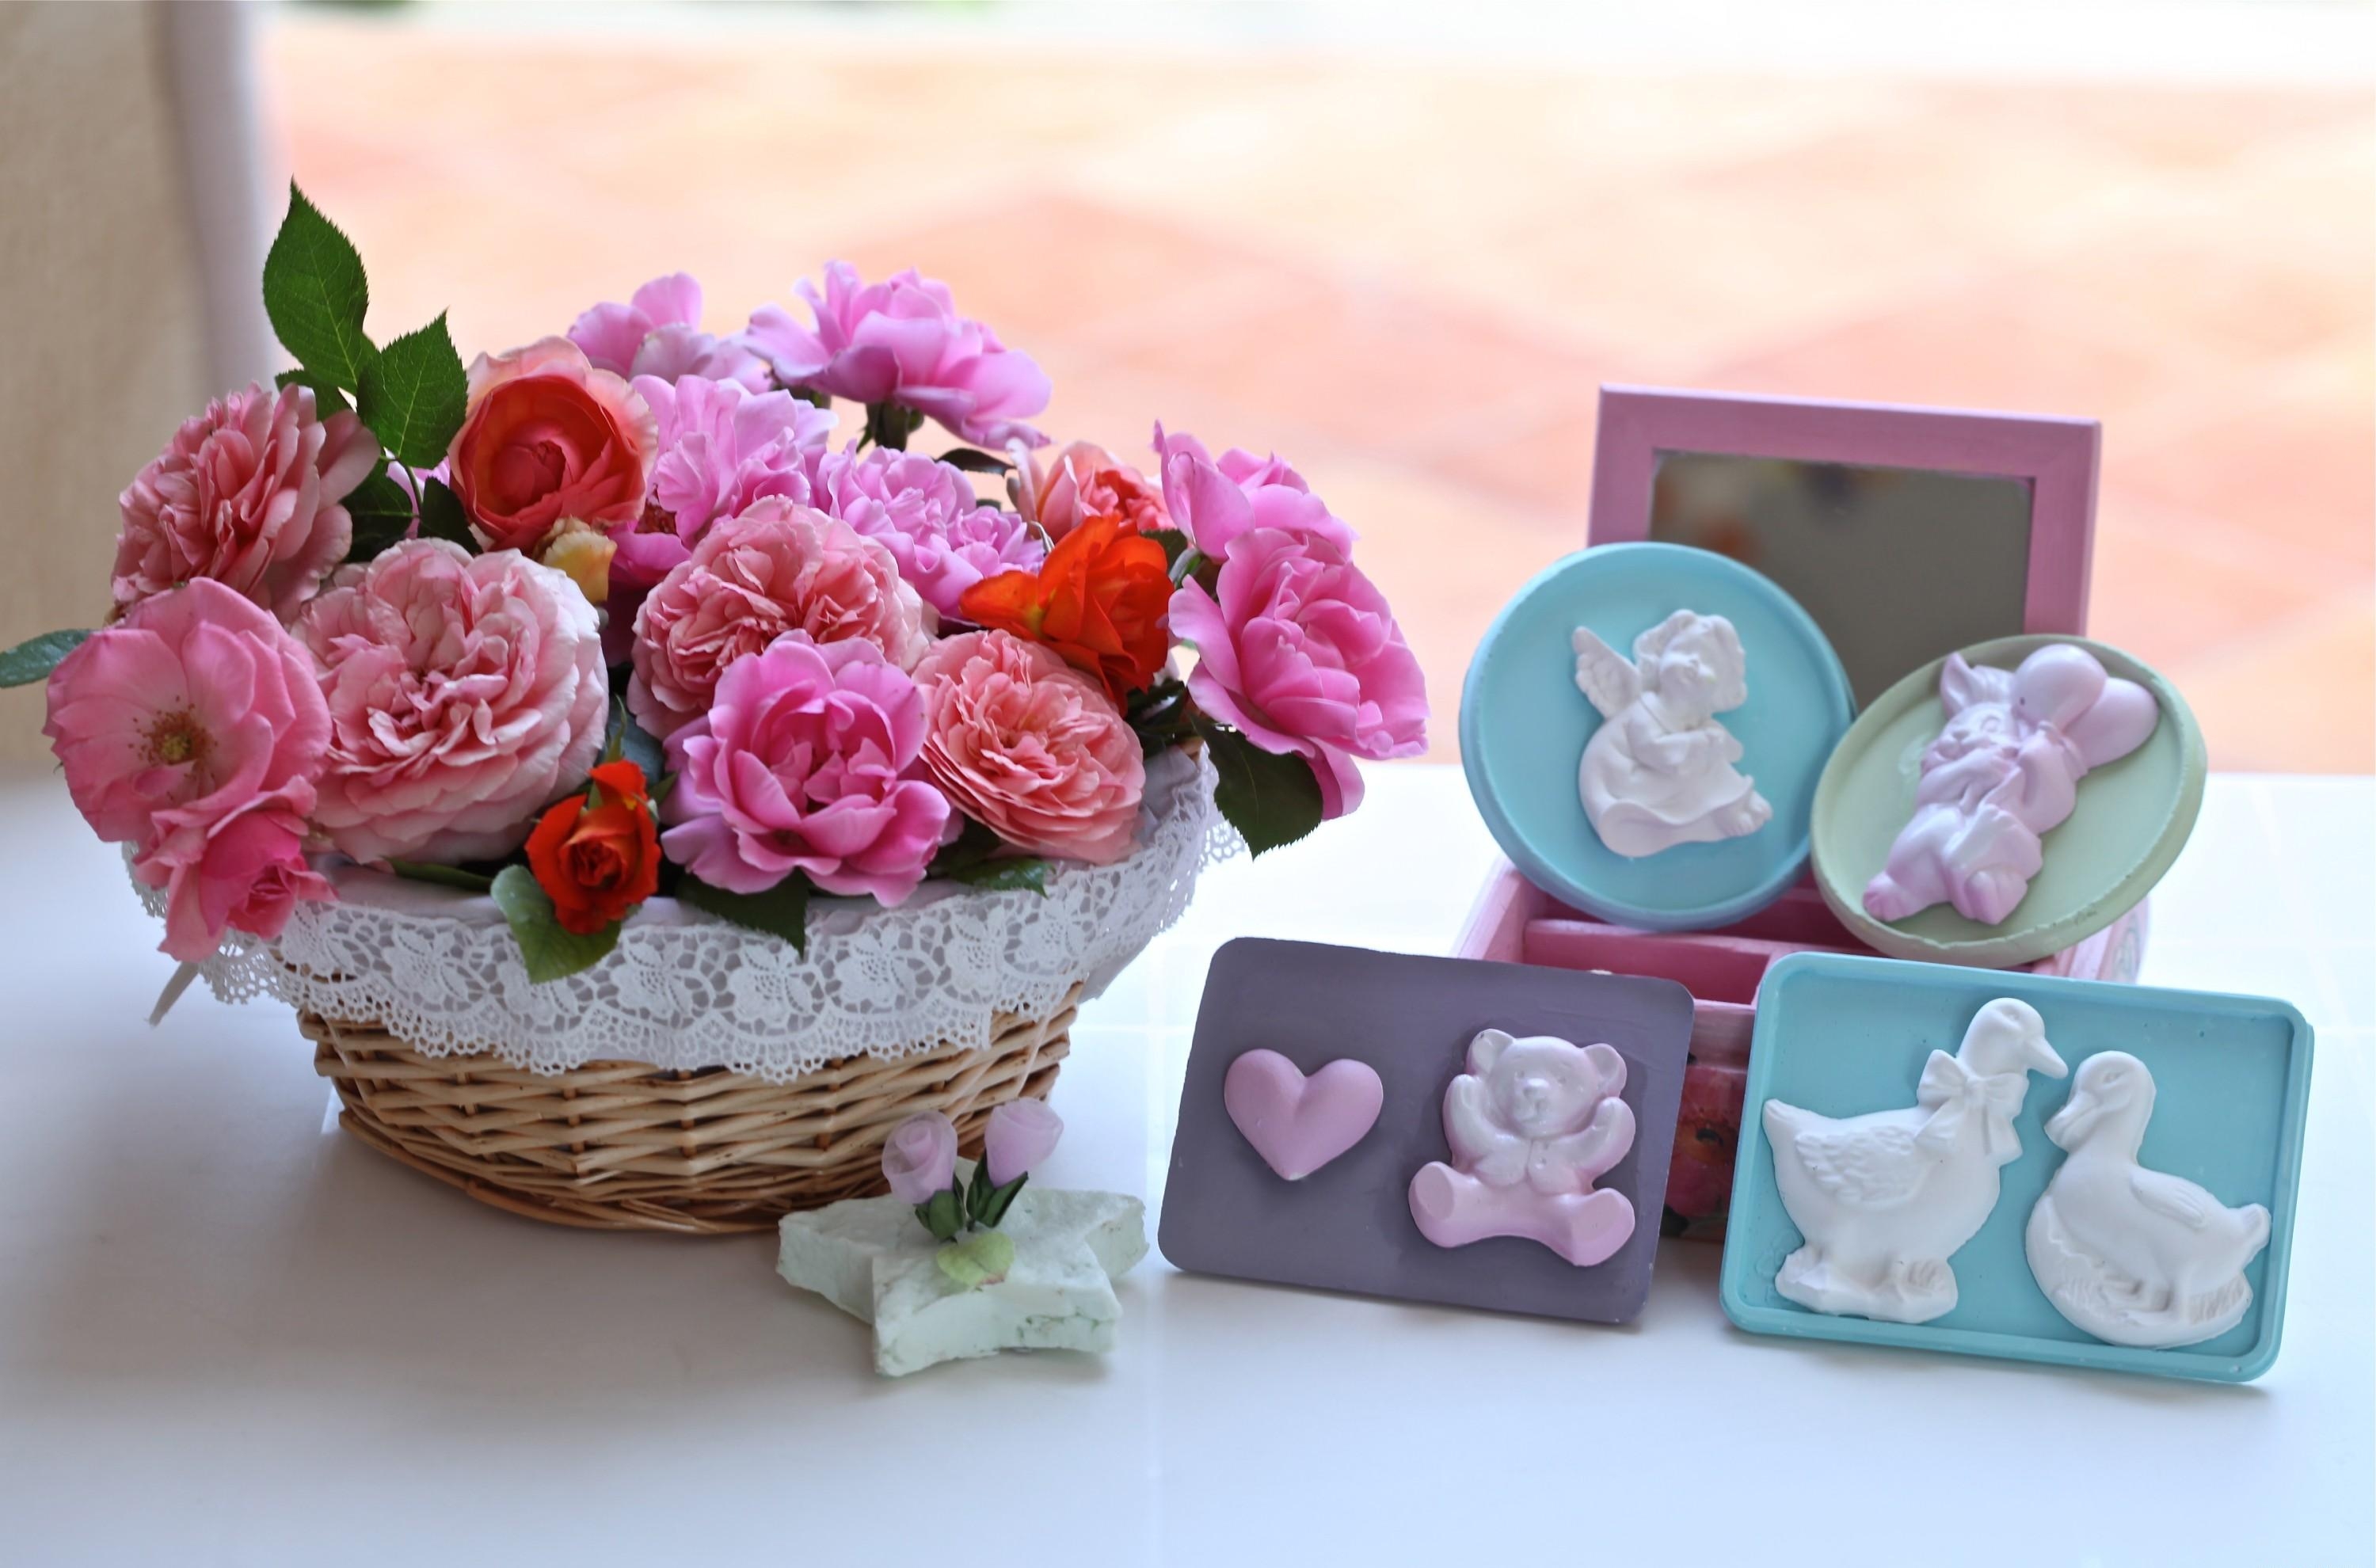 roses, flowers, garden, basket, napkin, crafts